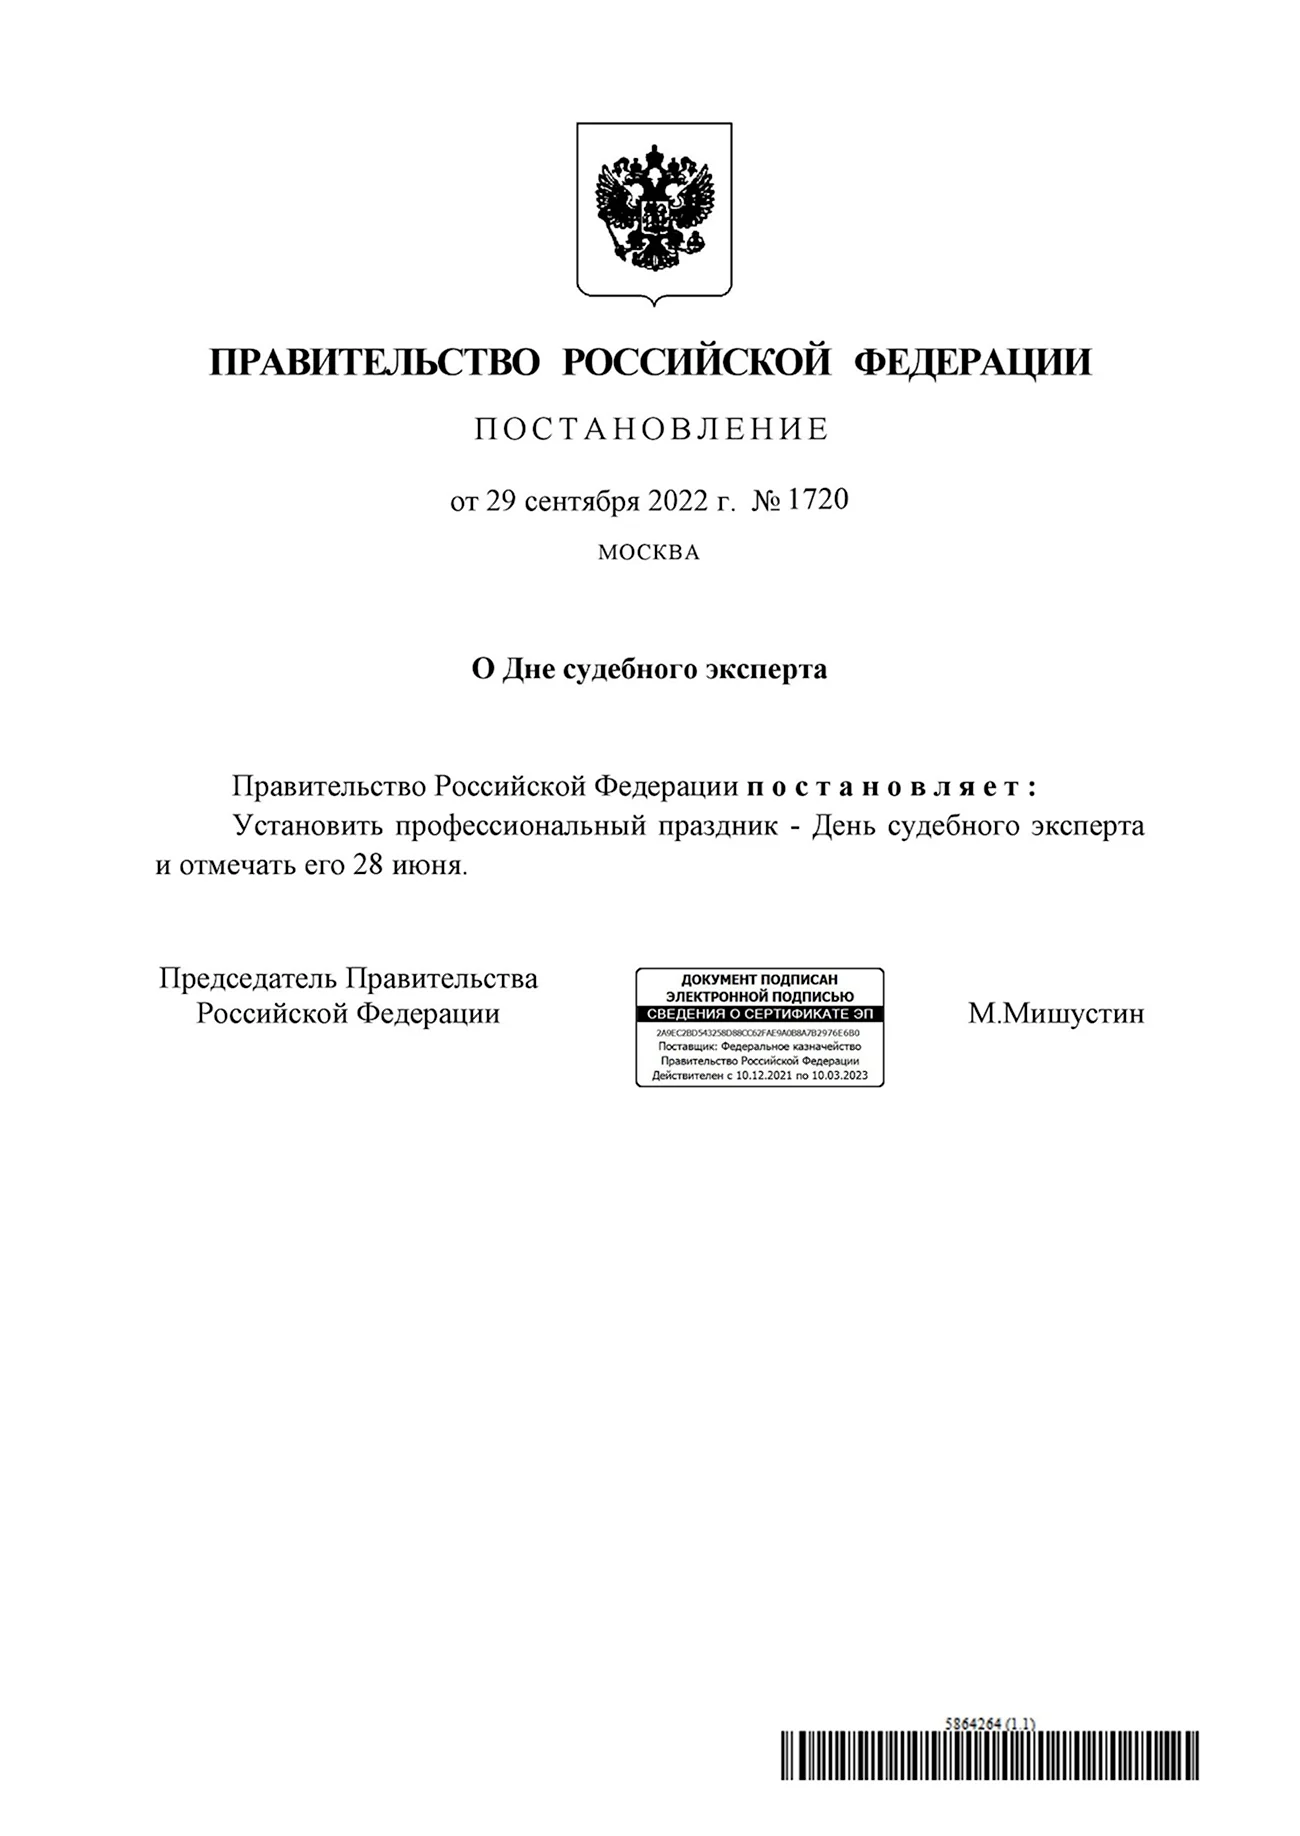 Постановление правительства Российской Федерации. Поздравление